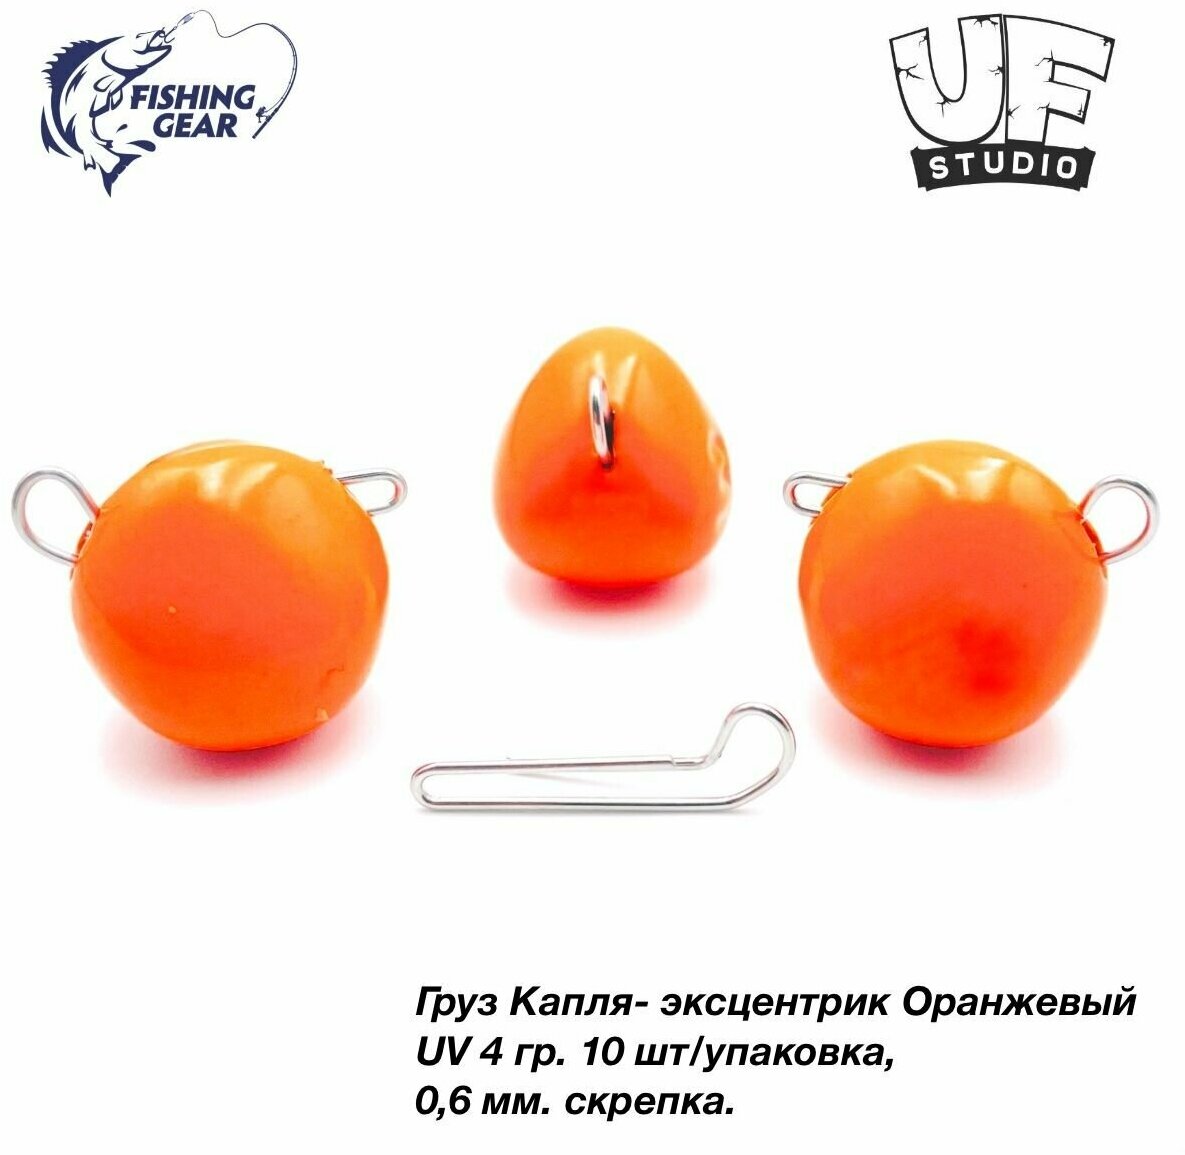 Груз Капля-эксцентрик 4 гр. (10шт) UF-STUDIO оранжевый UV (светится в ультрафиолете)